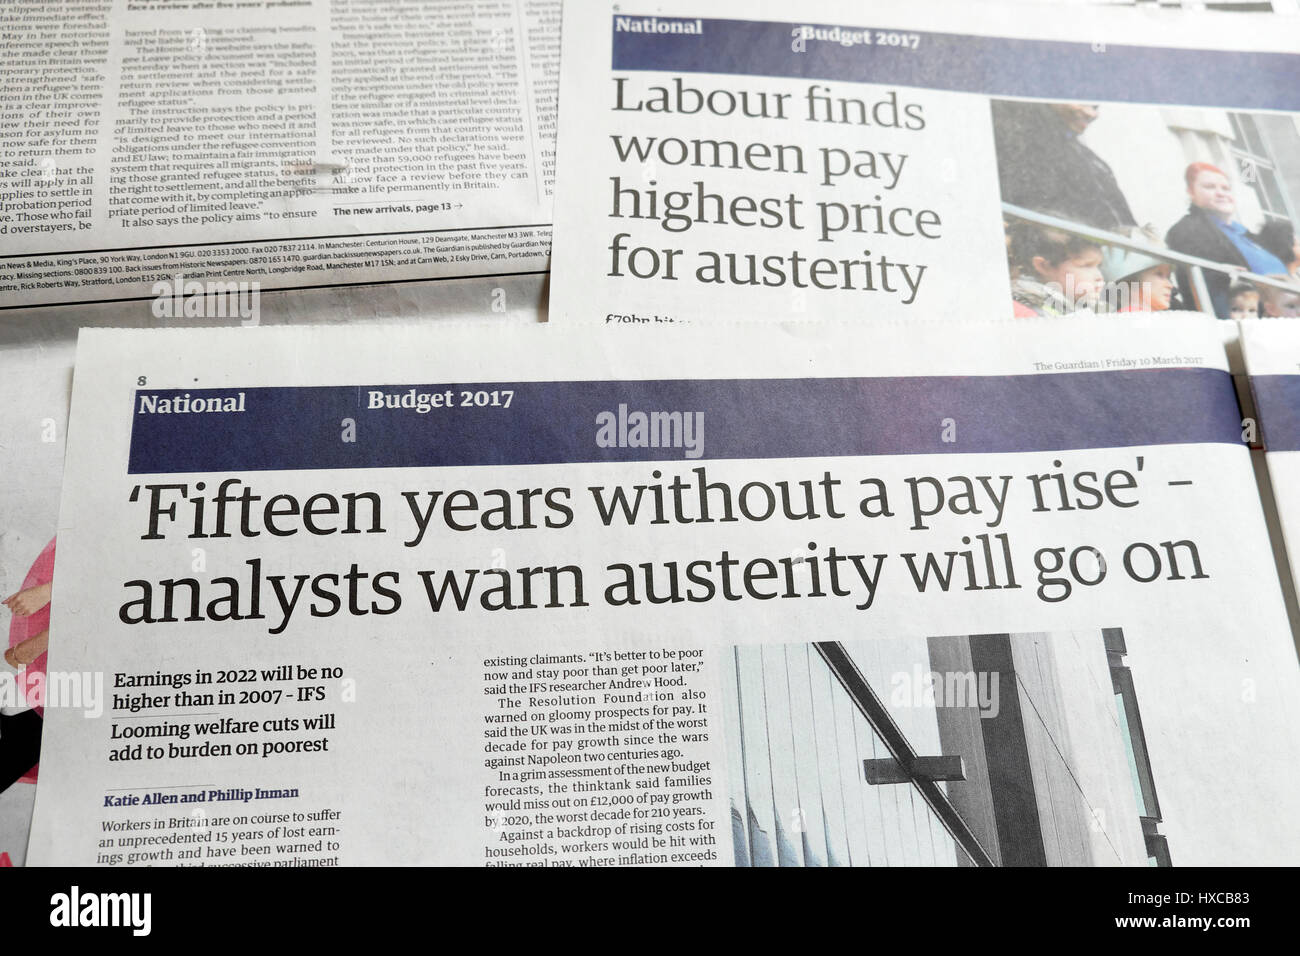 "Quindici anni senza un aumento di stipendio - Gli analisti avvertono austerità andrà sull' quotidiano Guardian articolo headline London REGNO UNITO Foto Stock